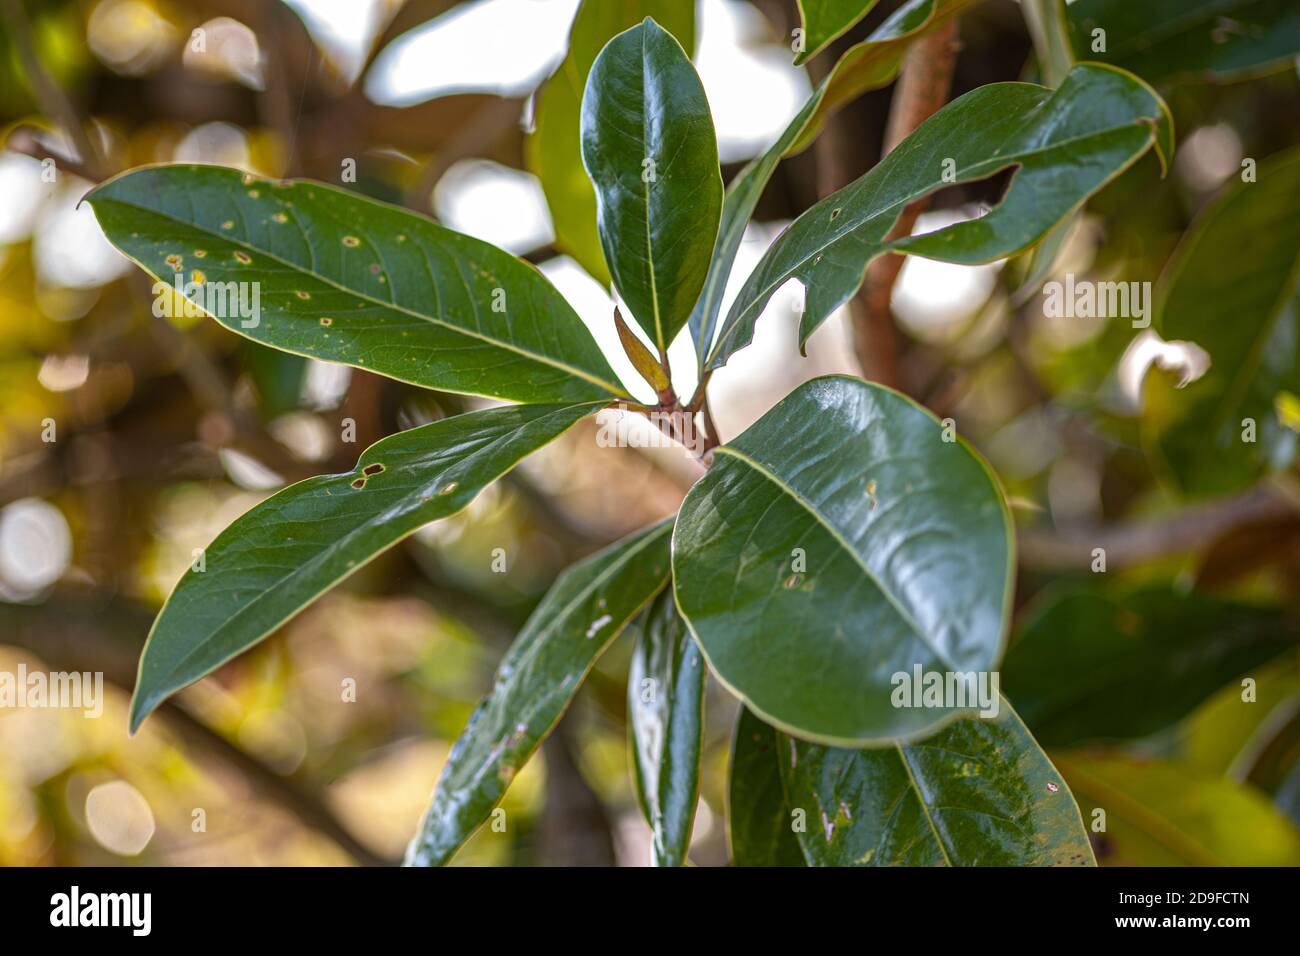 Magnolia leaves detail, image taken during spring season Stock Photo